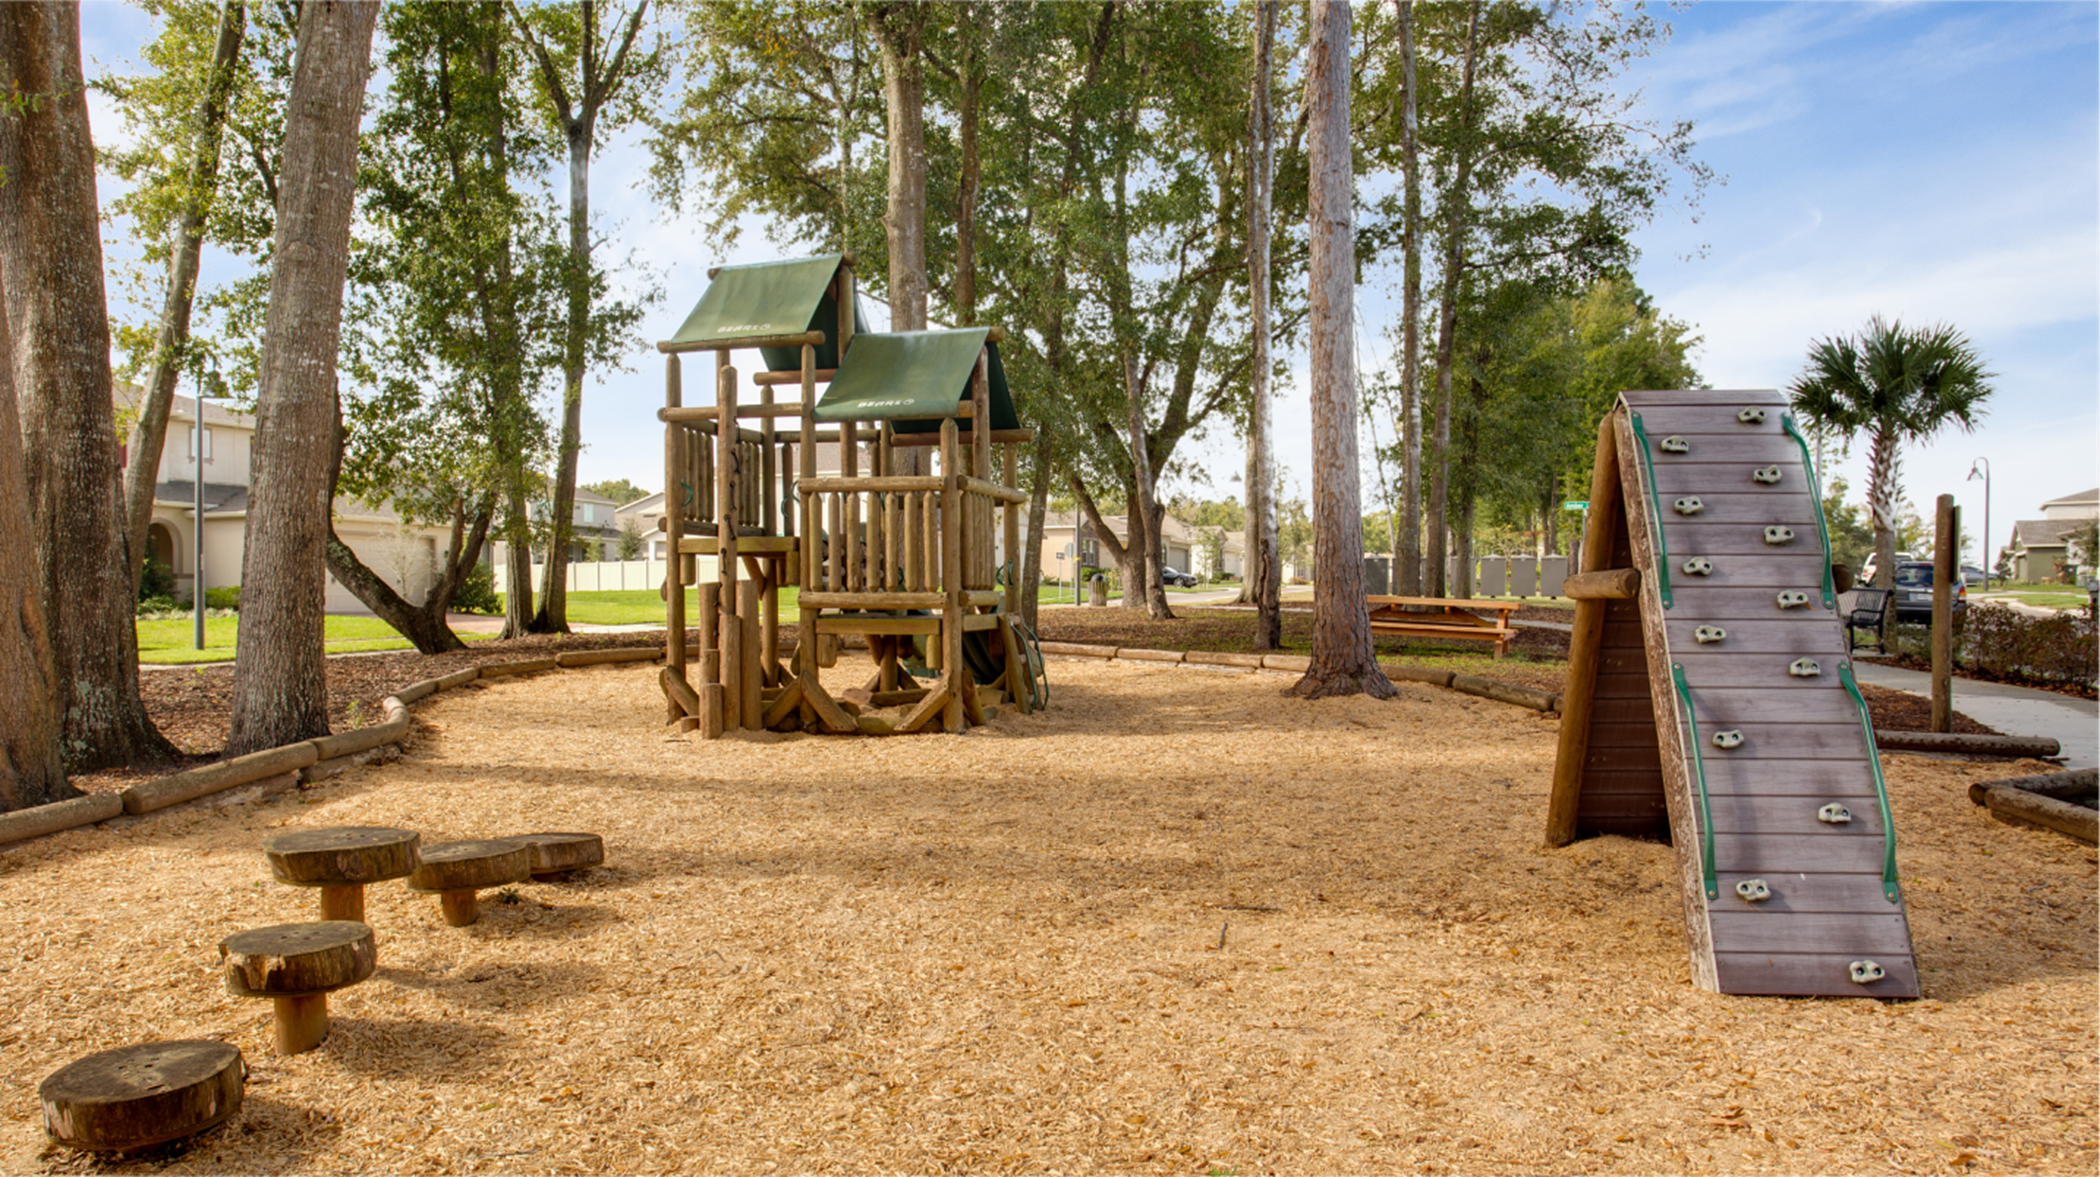 Arden Park Community Playground